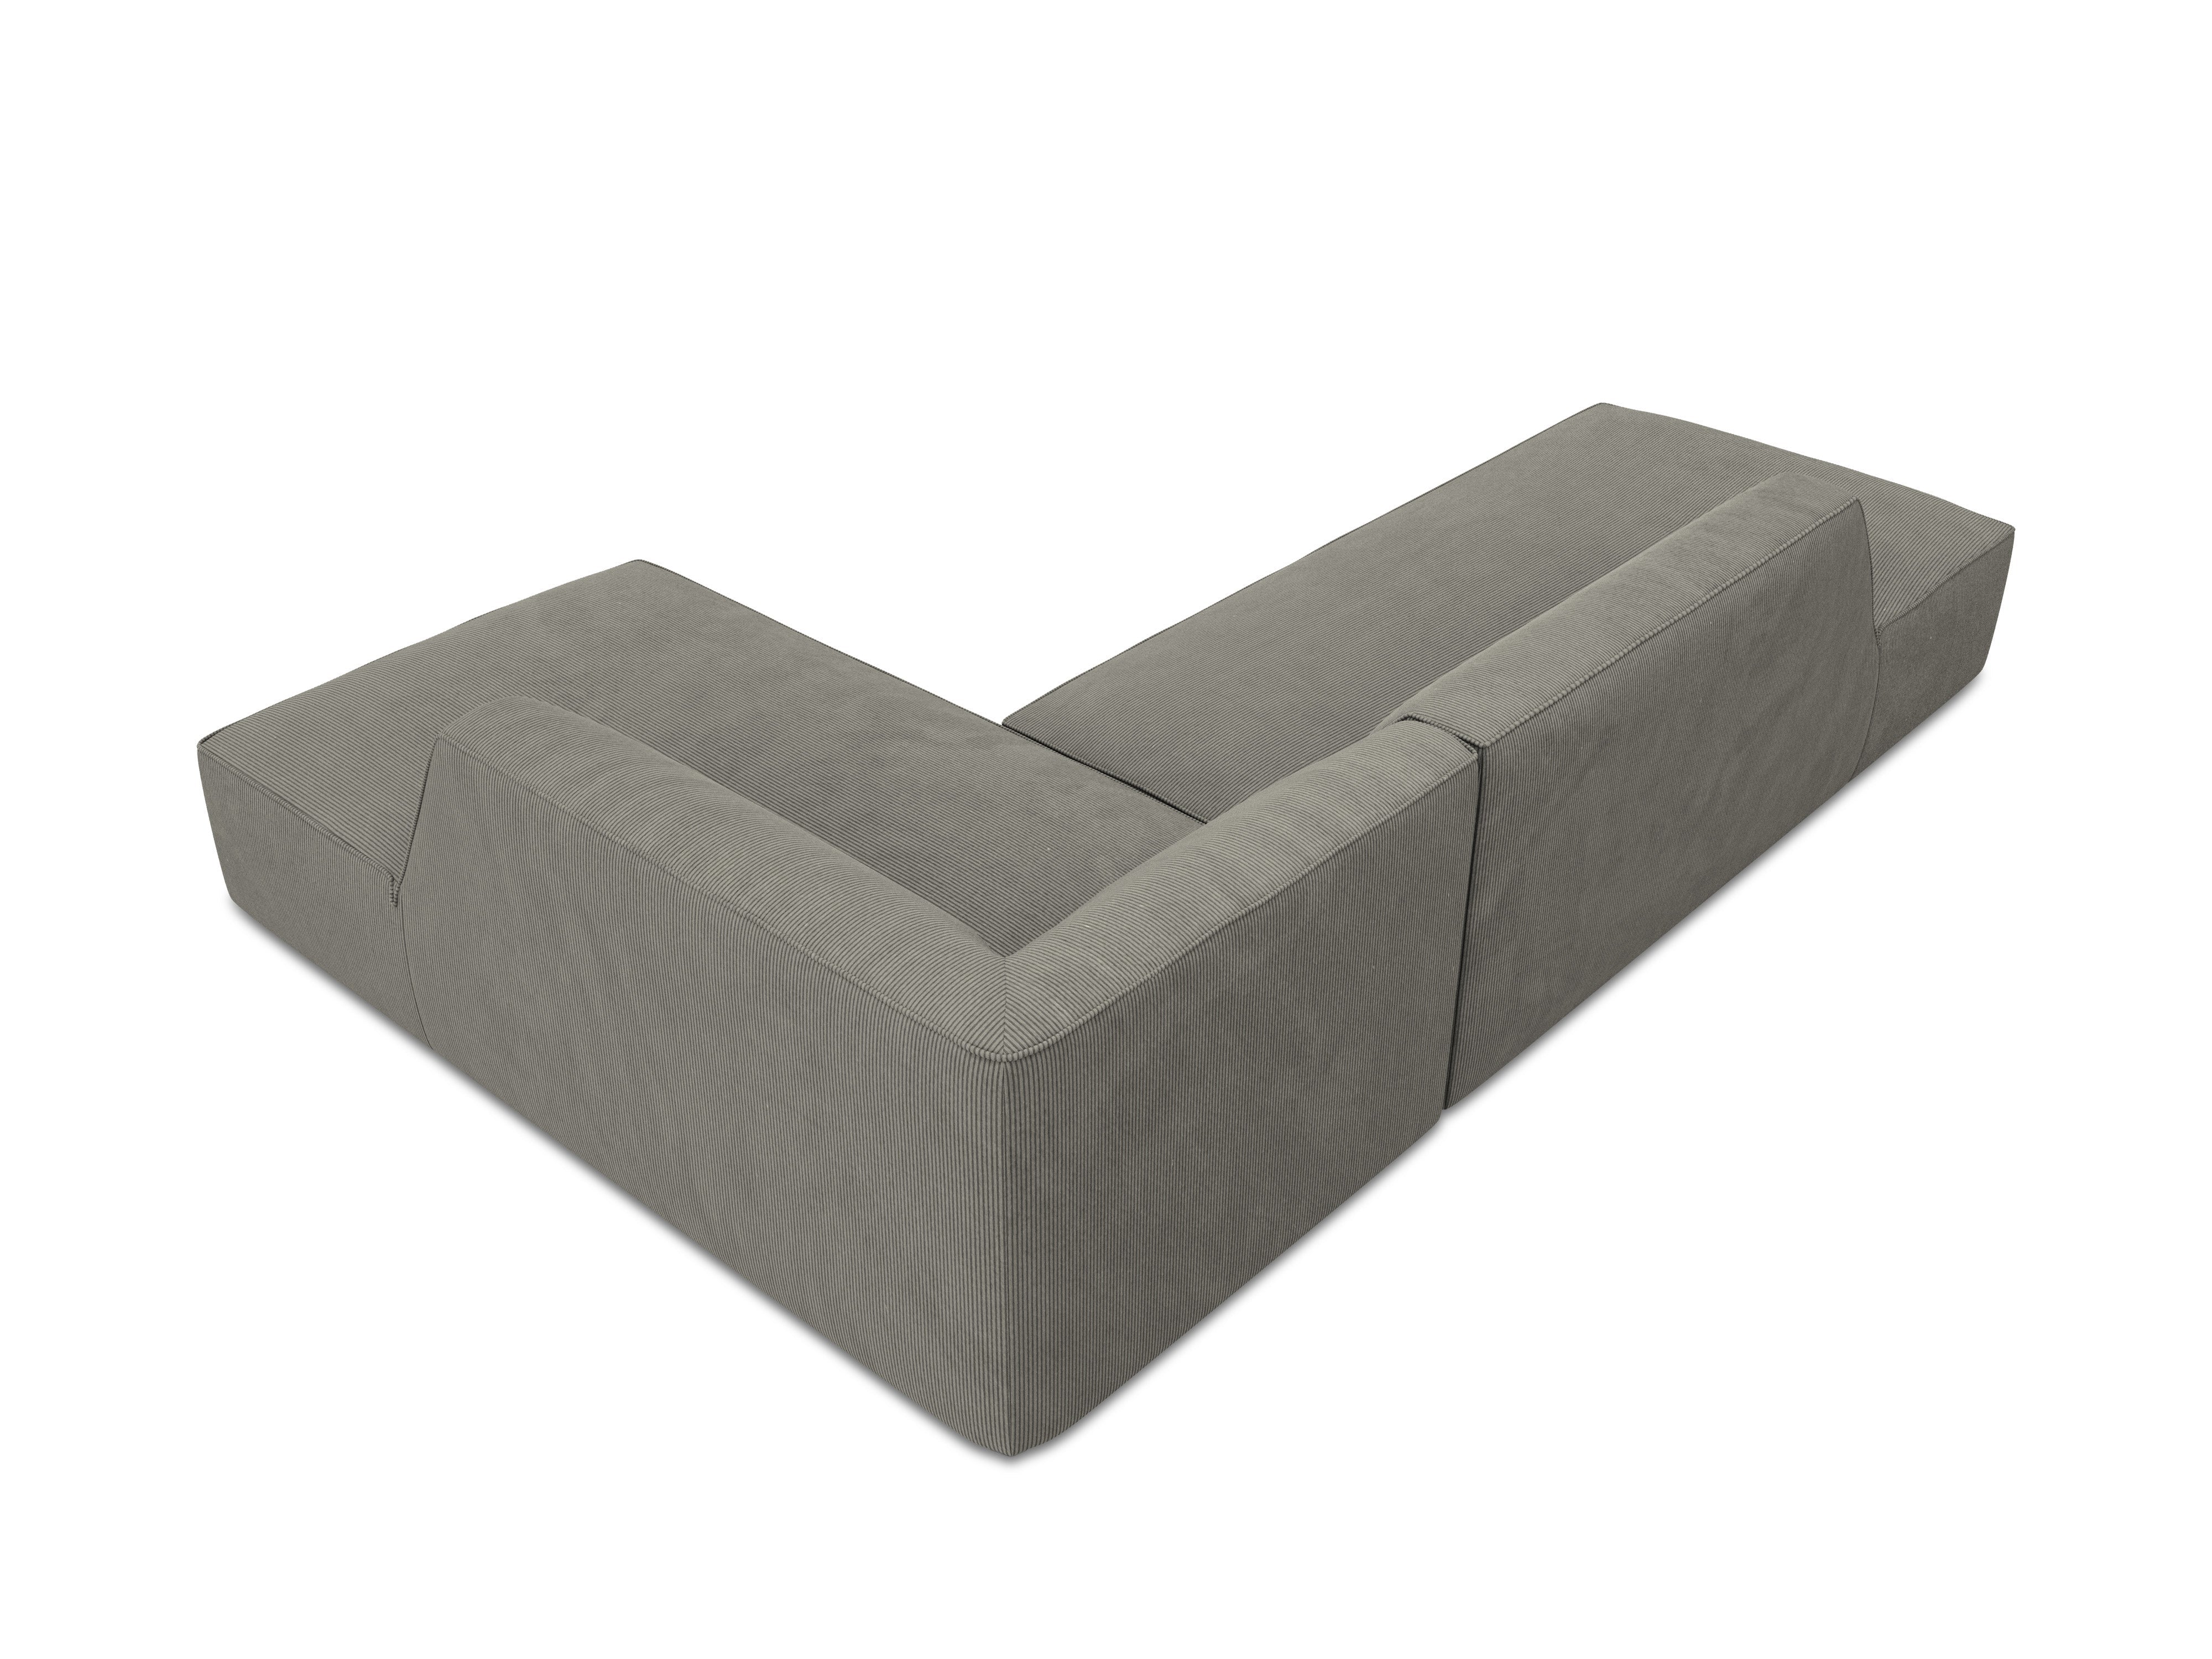 Sofa with light gray corduroy